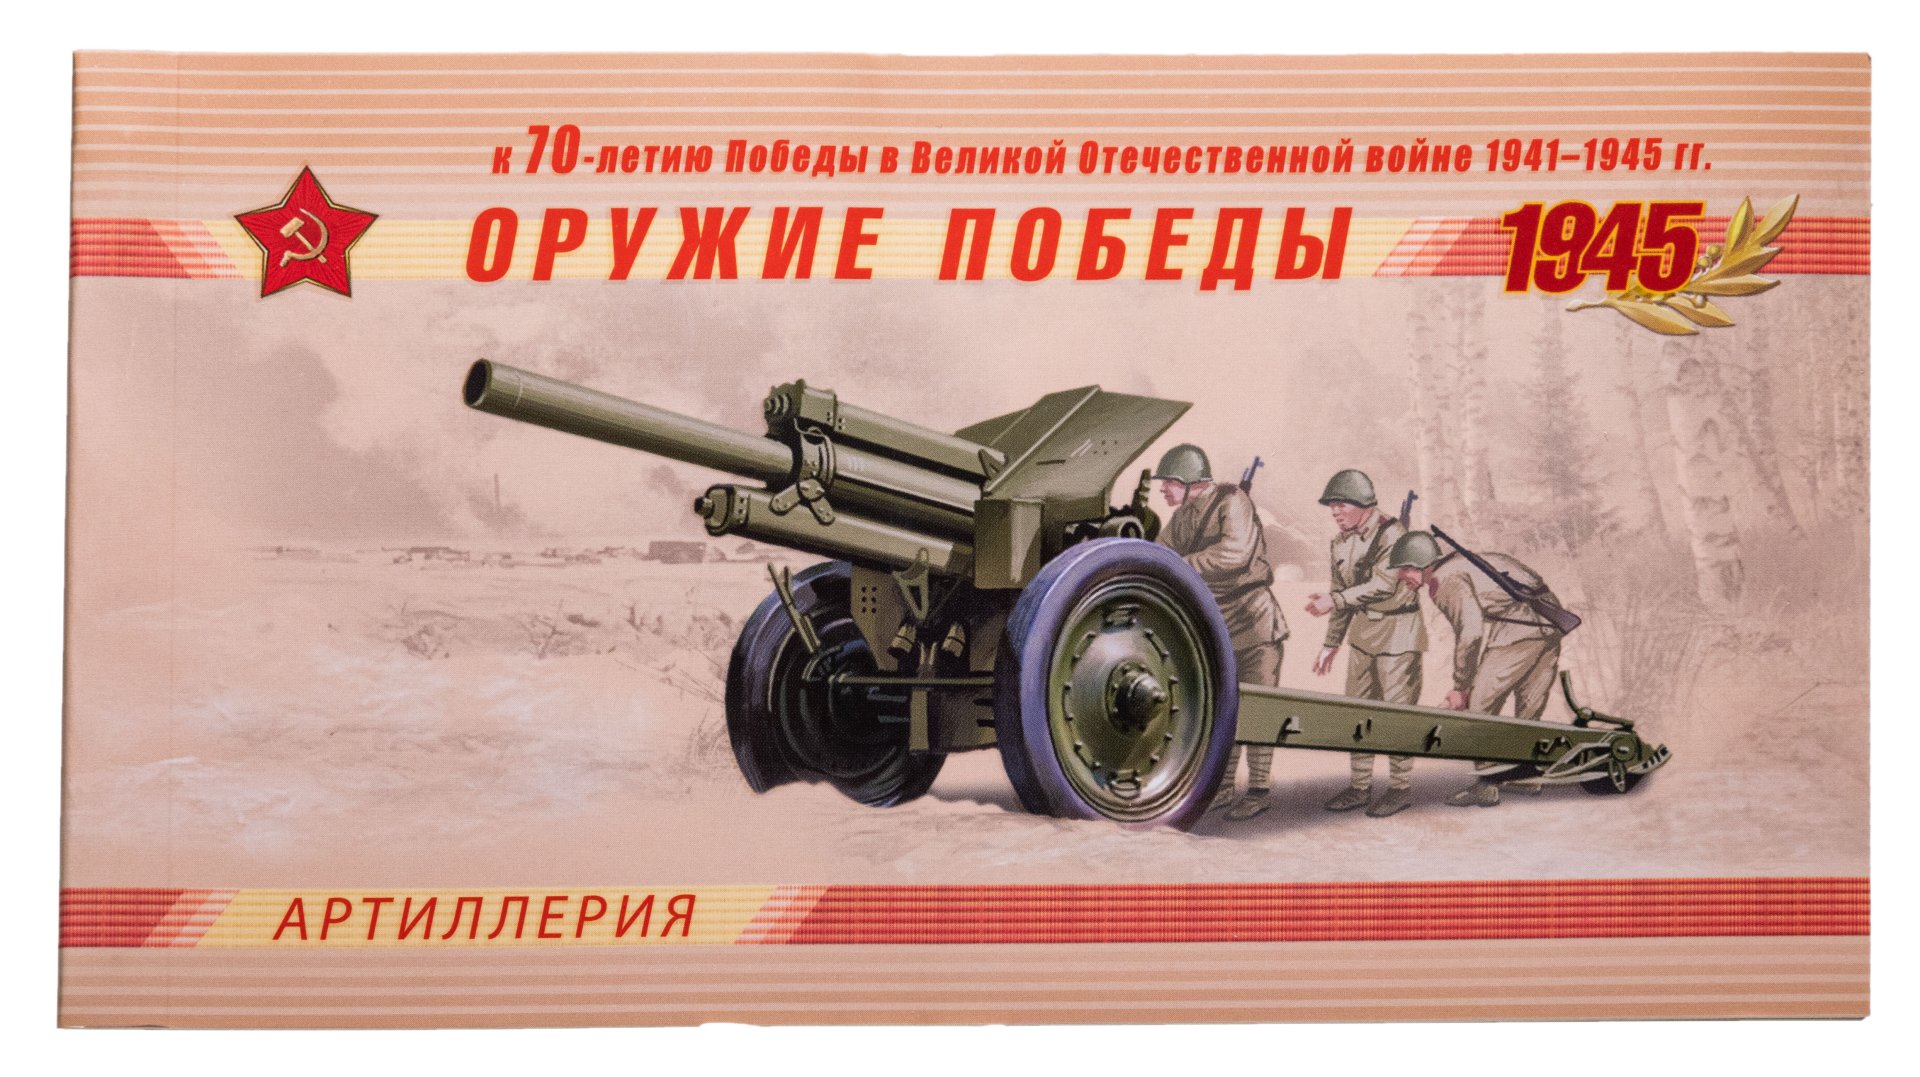 Оружие Победы во время Великой Отечественной войны